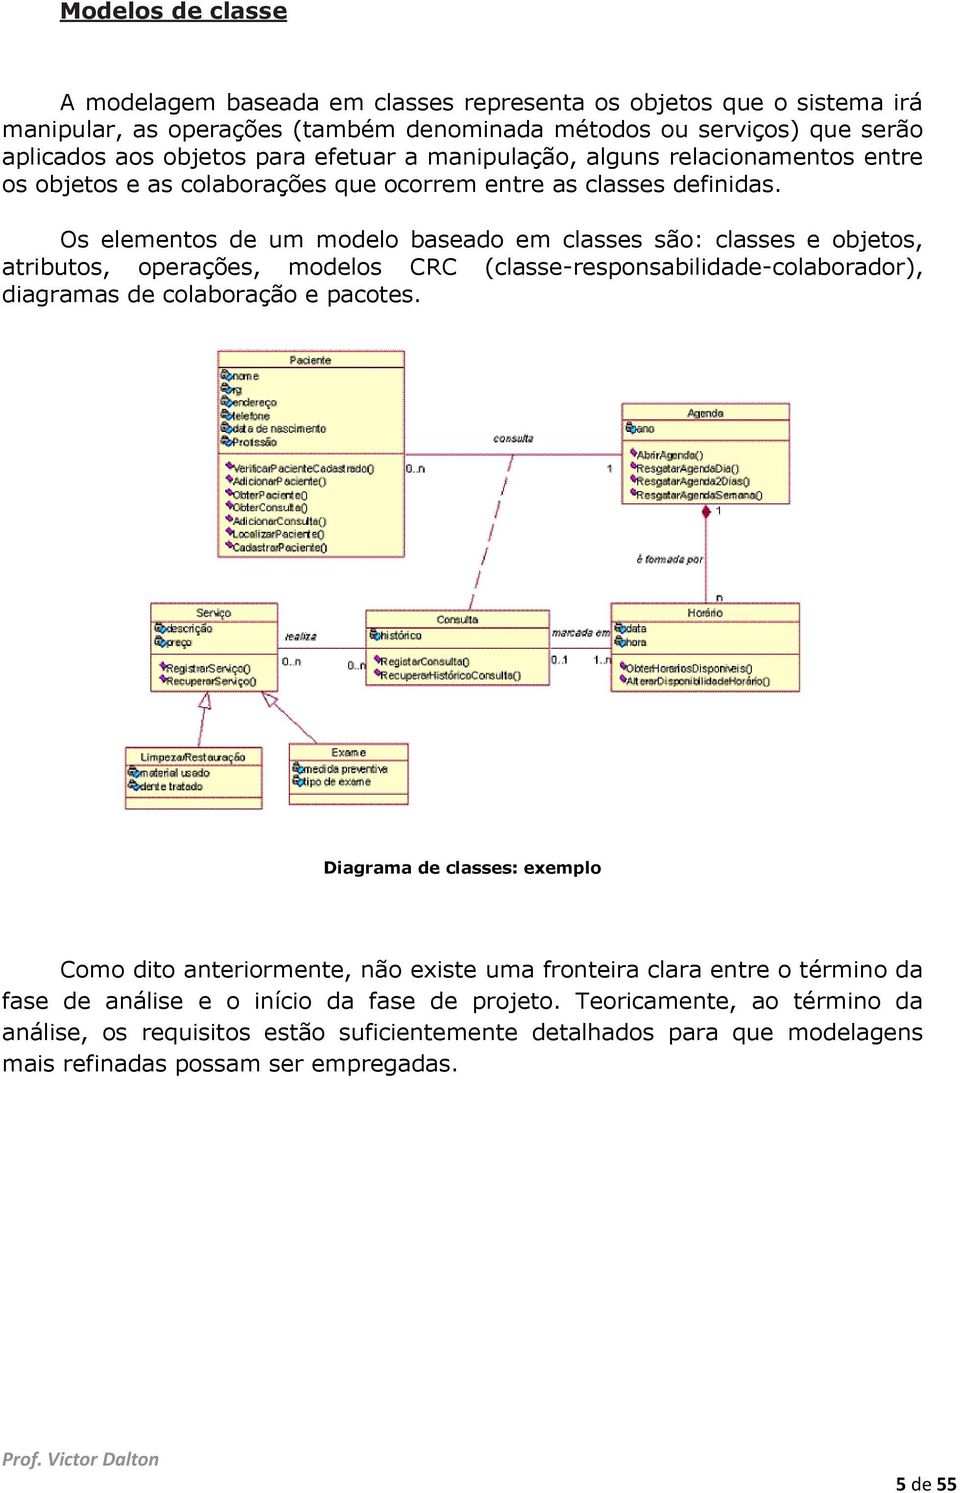 Os elementos de um modelo baseado em classes são: classes e objetos, atributos, operações, modelos CRC (classe-responsabilidade-colaborador), diagramas de colaboração e pacotes.